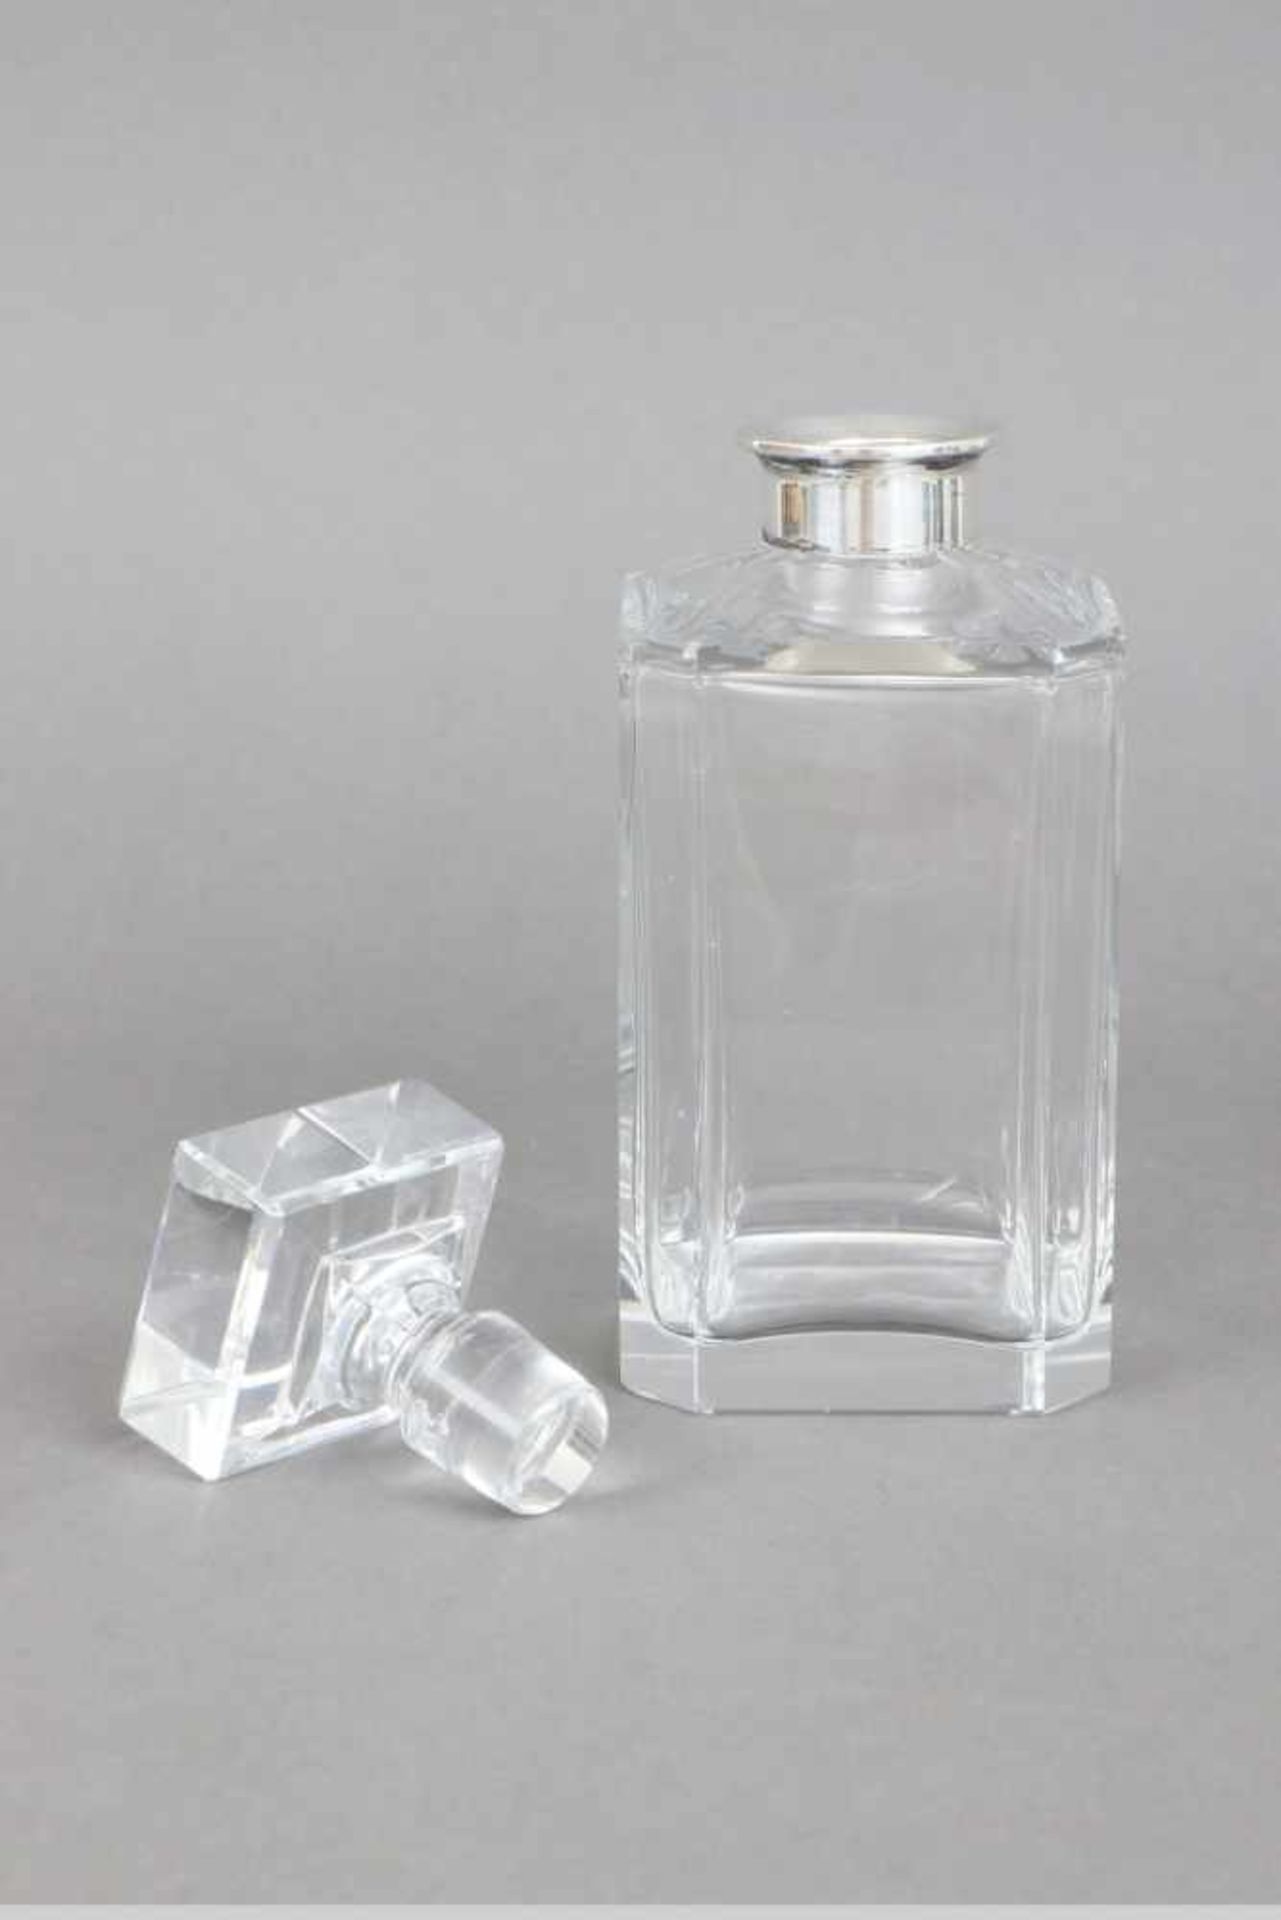 Whiskey Karaffe farbloses Kristall, 835er Silbermanschette, Deutsch, eckiger Korpus, gekantet, - Bild 2 aus 2